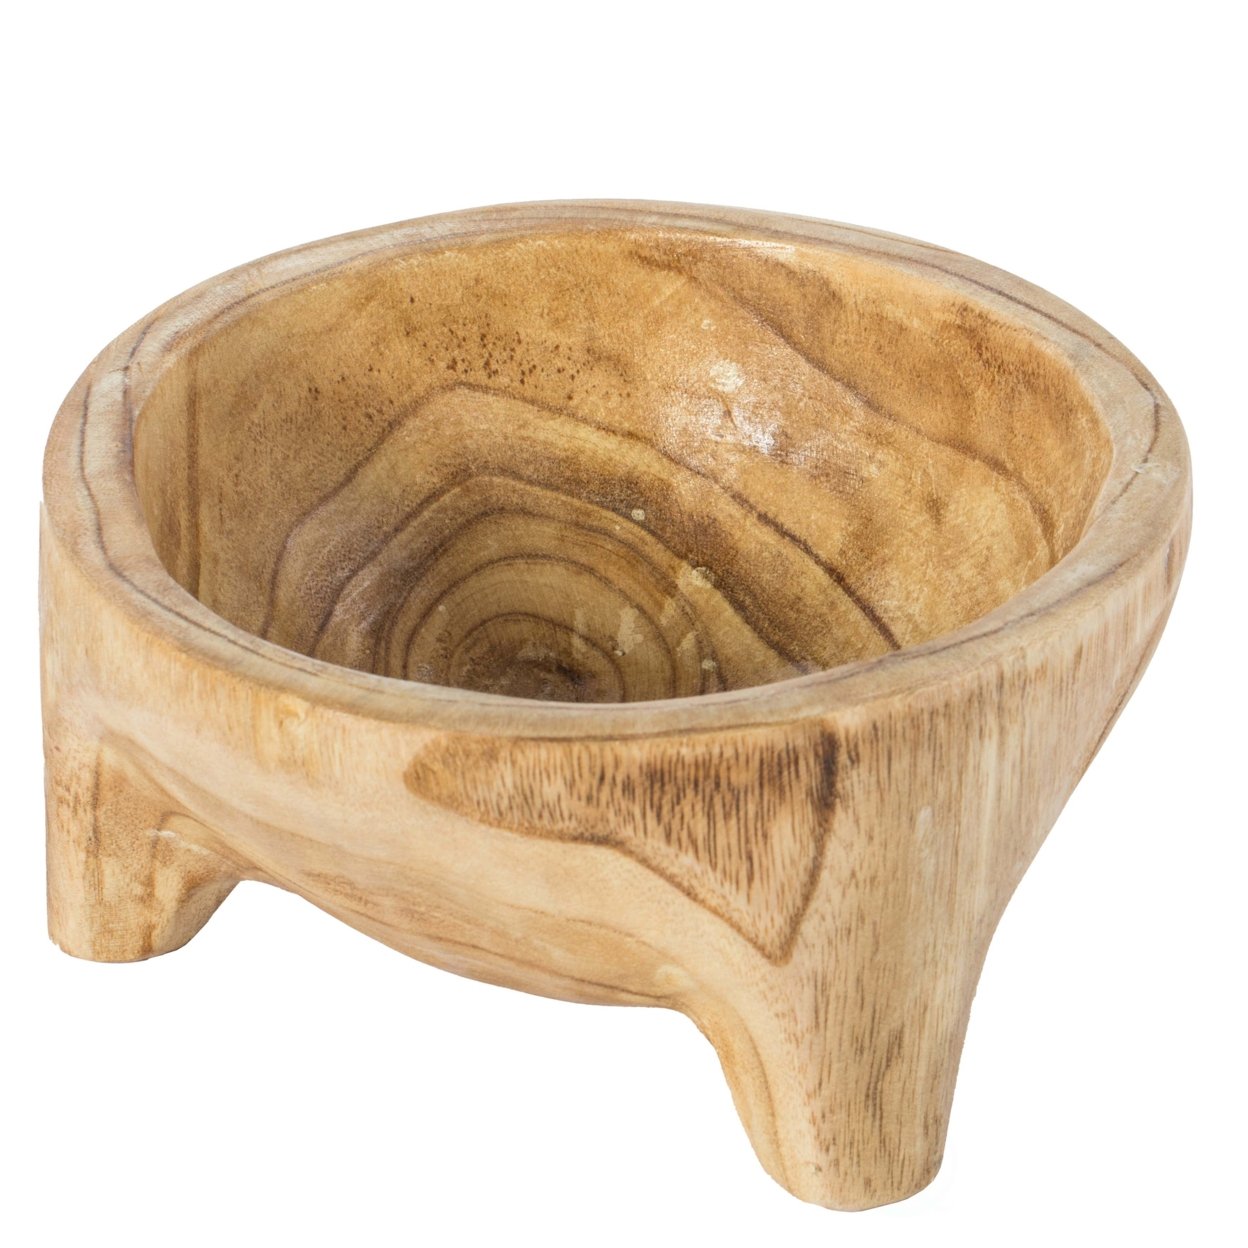 Burned Wood Carved Small Serving Fruit Bowl Bread Basket